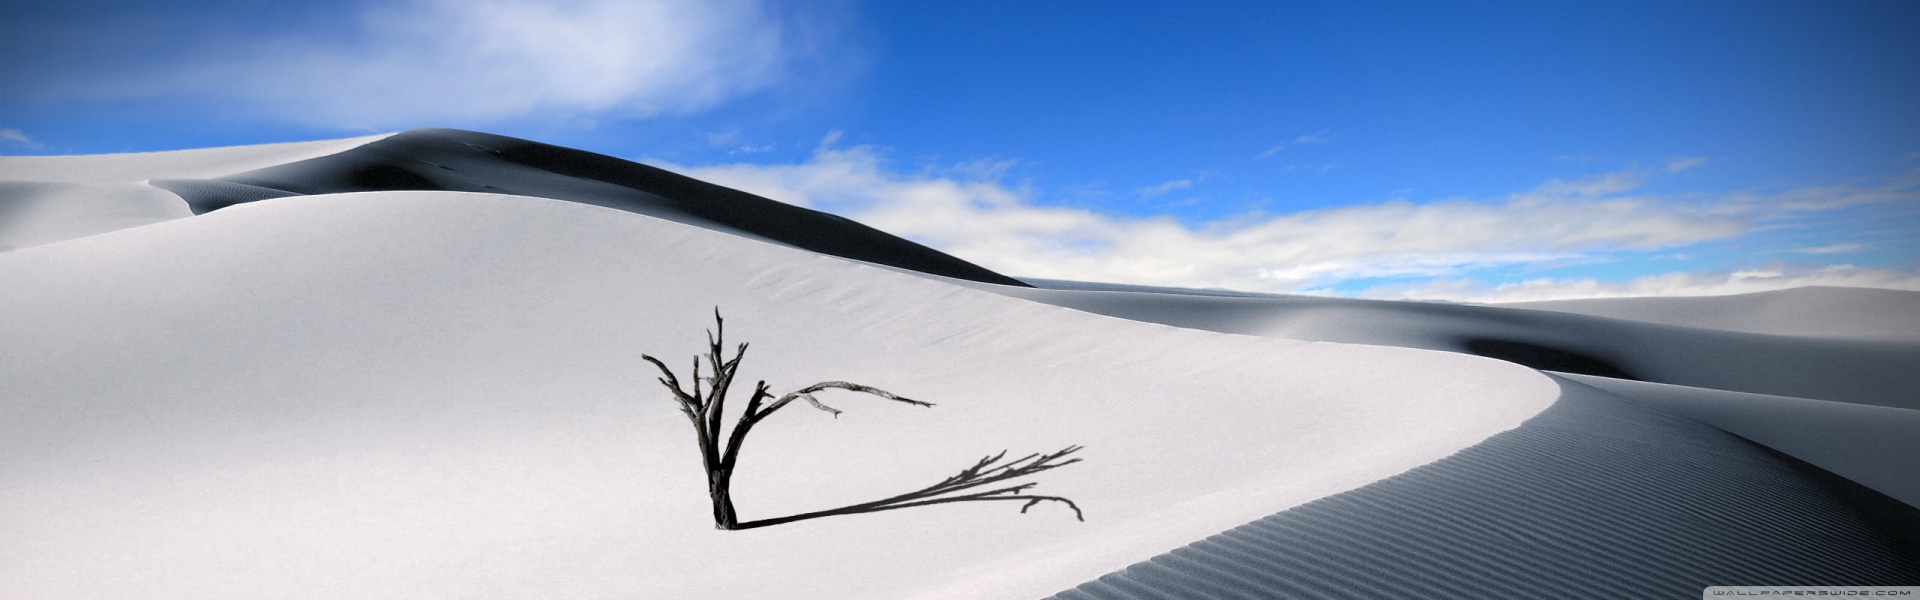 White Desert Ultra HD Desktop Background Wallpaper for : Multi Display ...